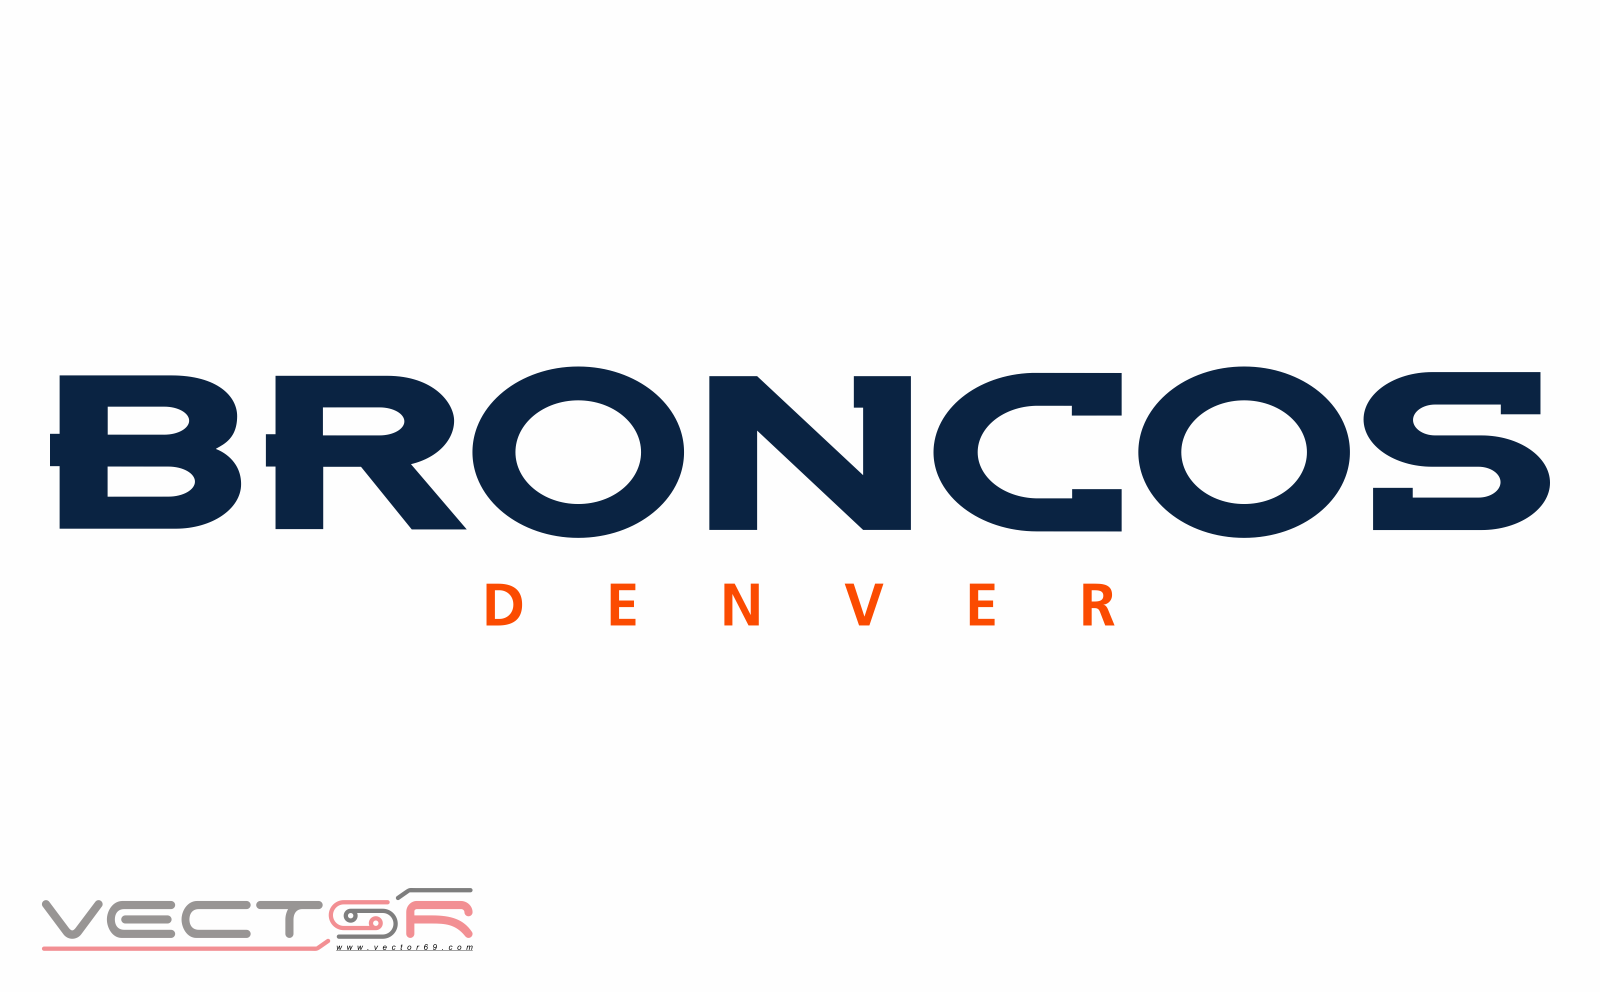 Denver Broncos Wordmark - Download Transparent Images, Portable Network Graphics (.PNG)